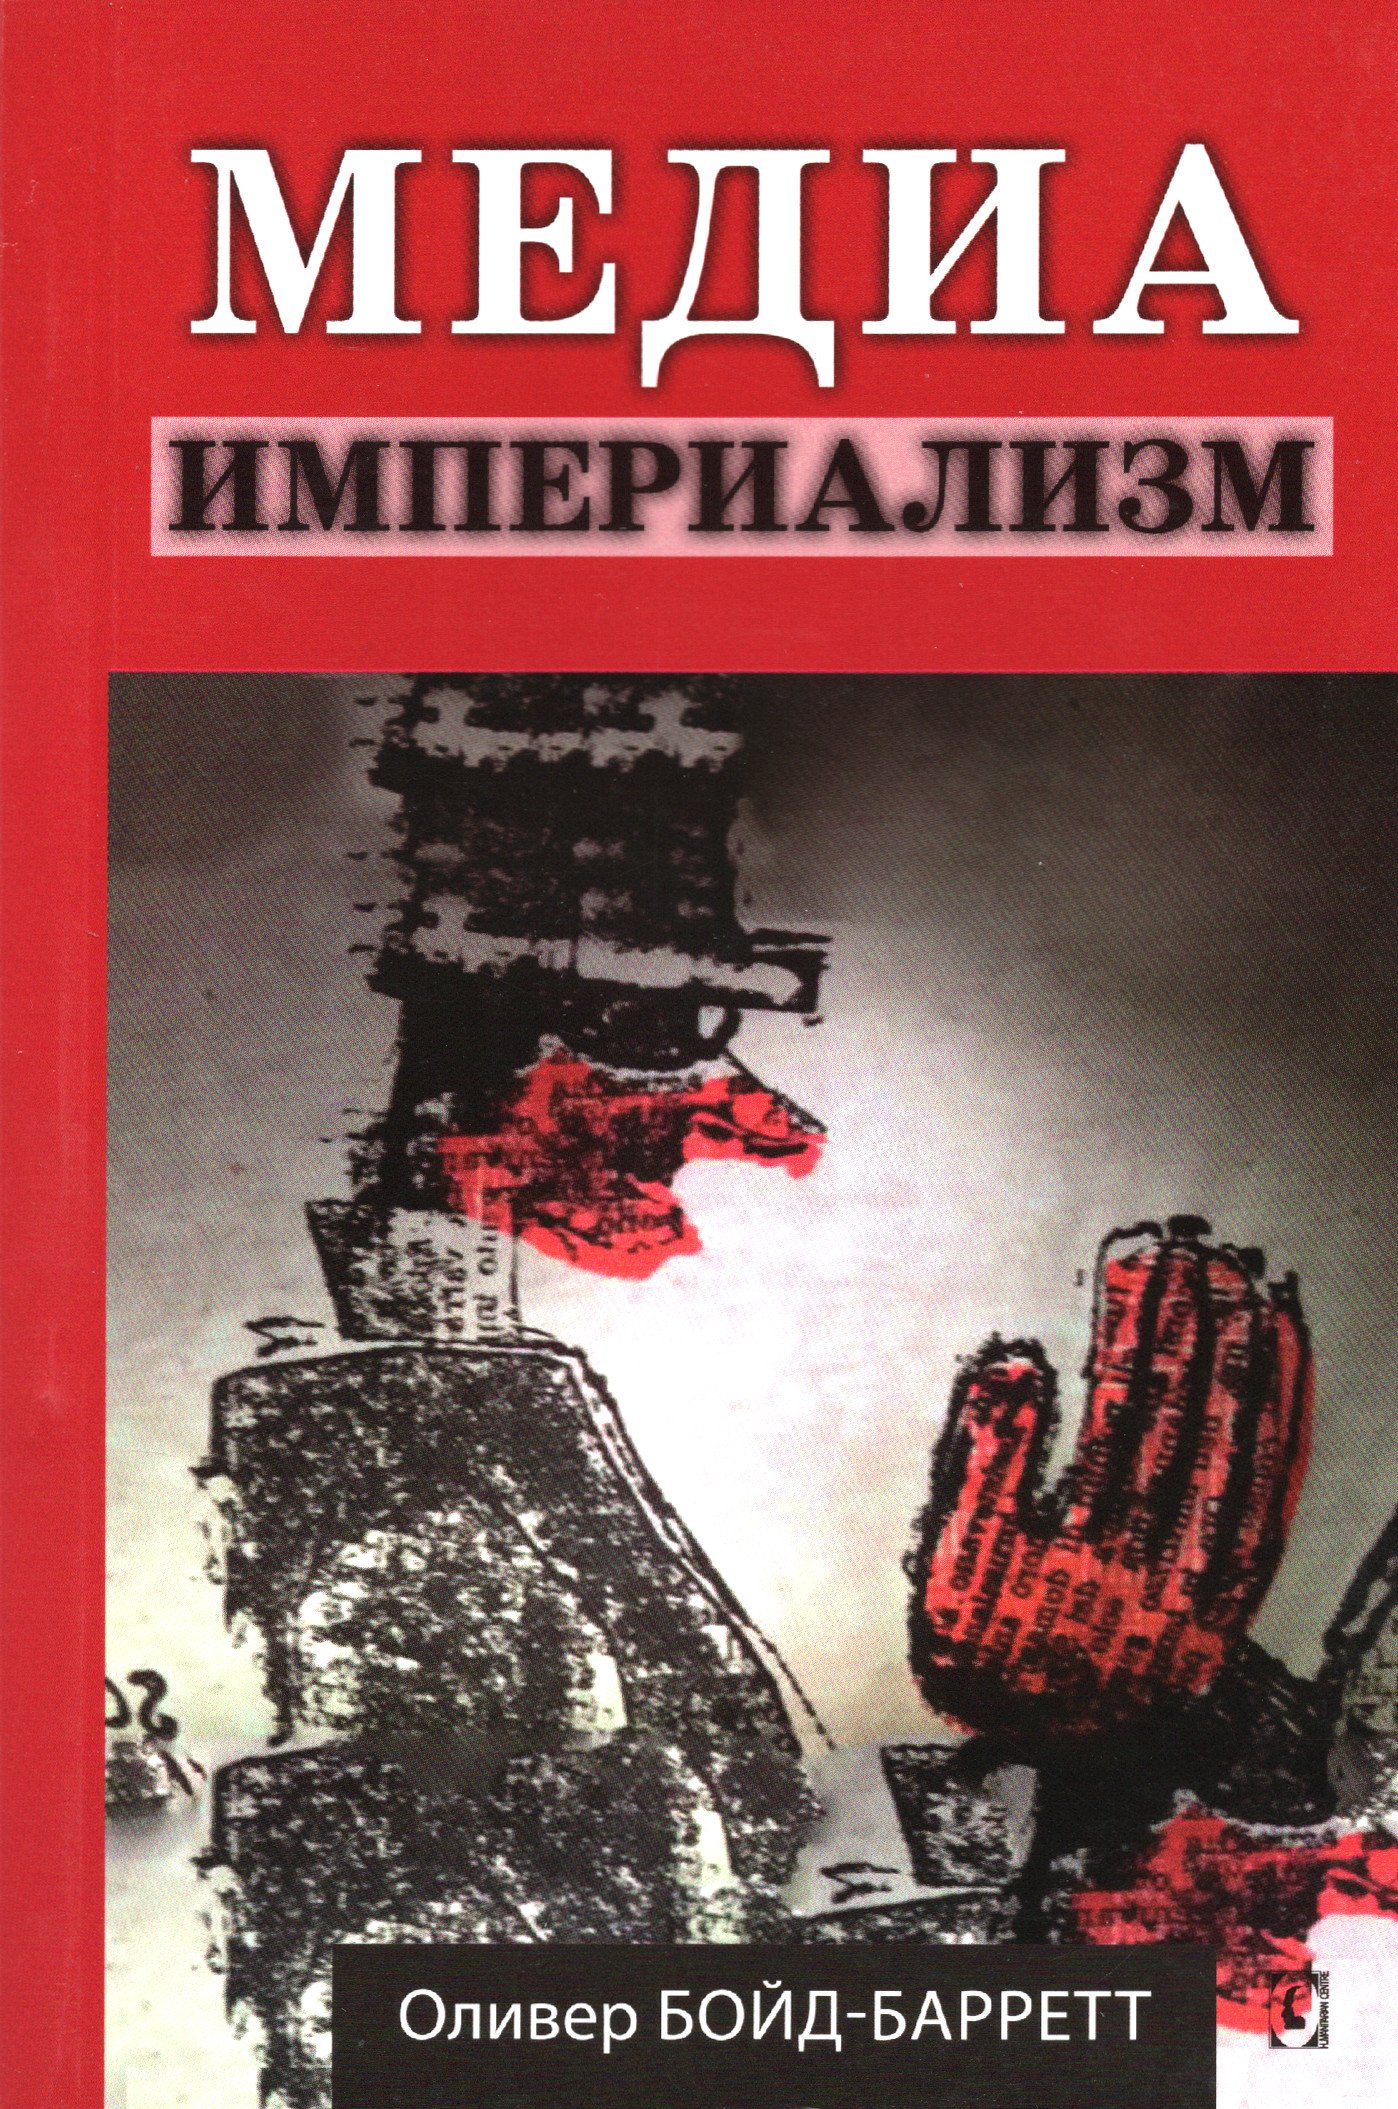 Купить книгу Медиа-империализм в интернет-магазине Ариаварта